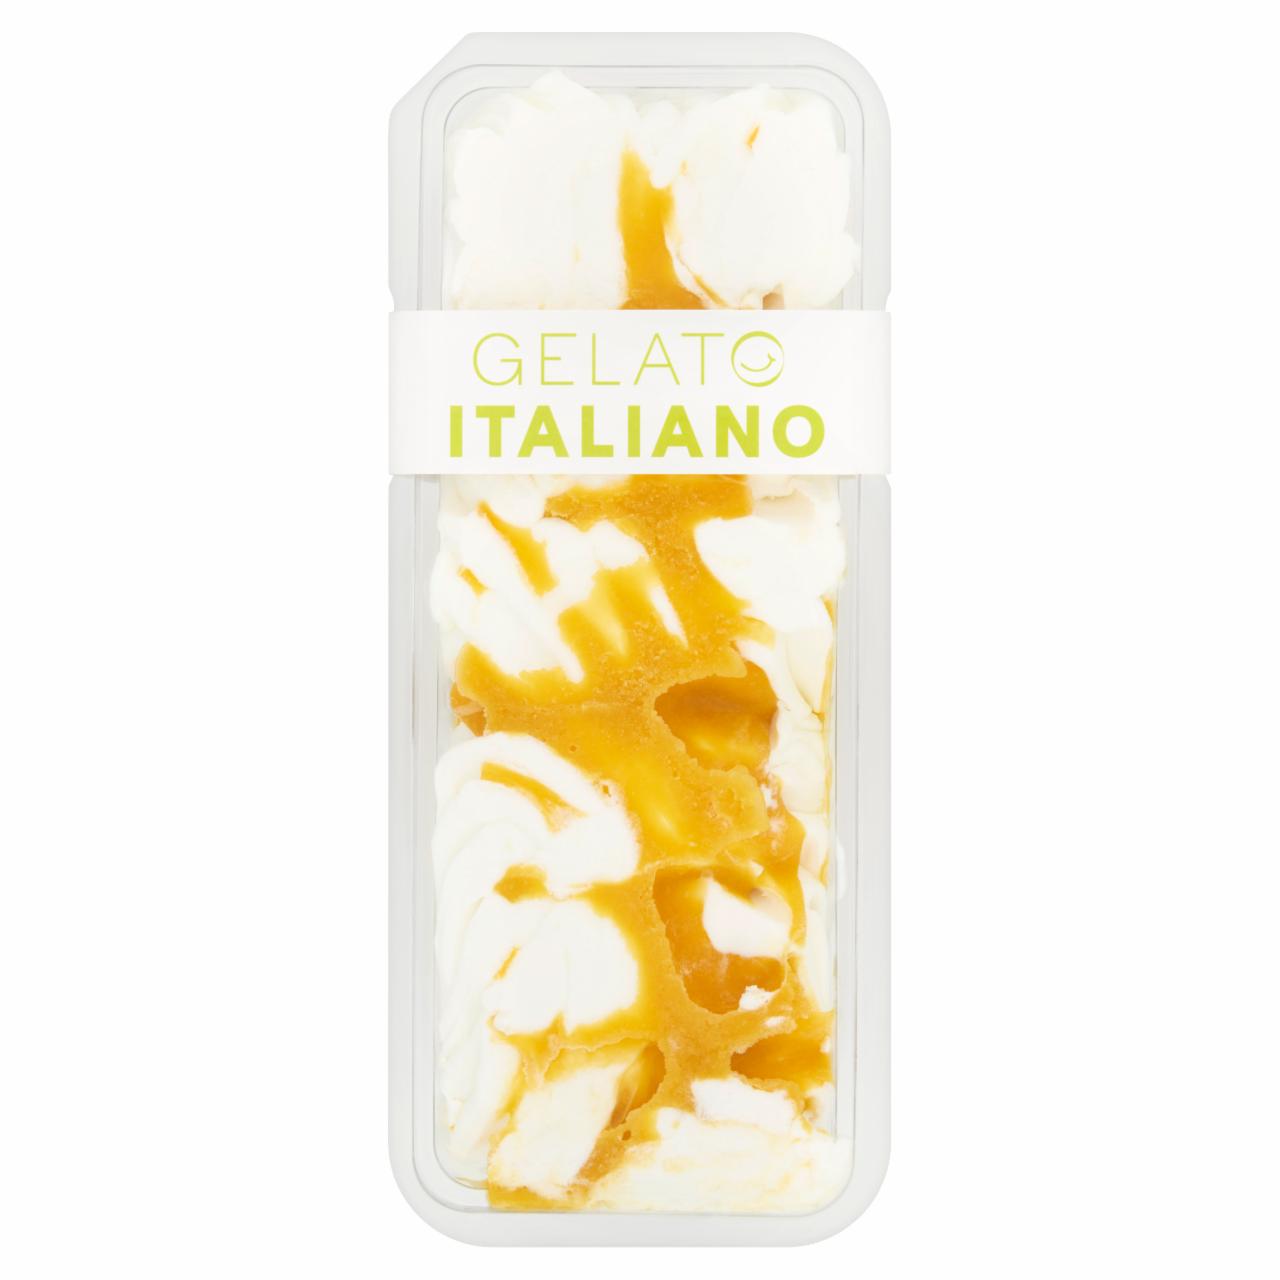 Képek - Gelato Italiano görög joghurt fagylalt mangóval 1000 ml